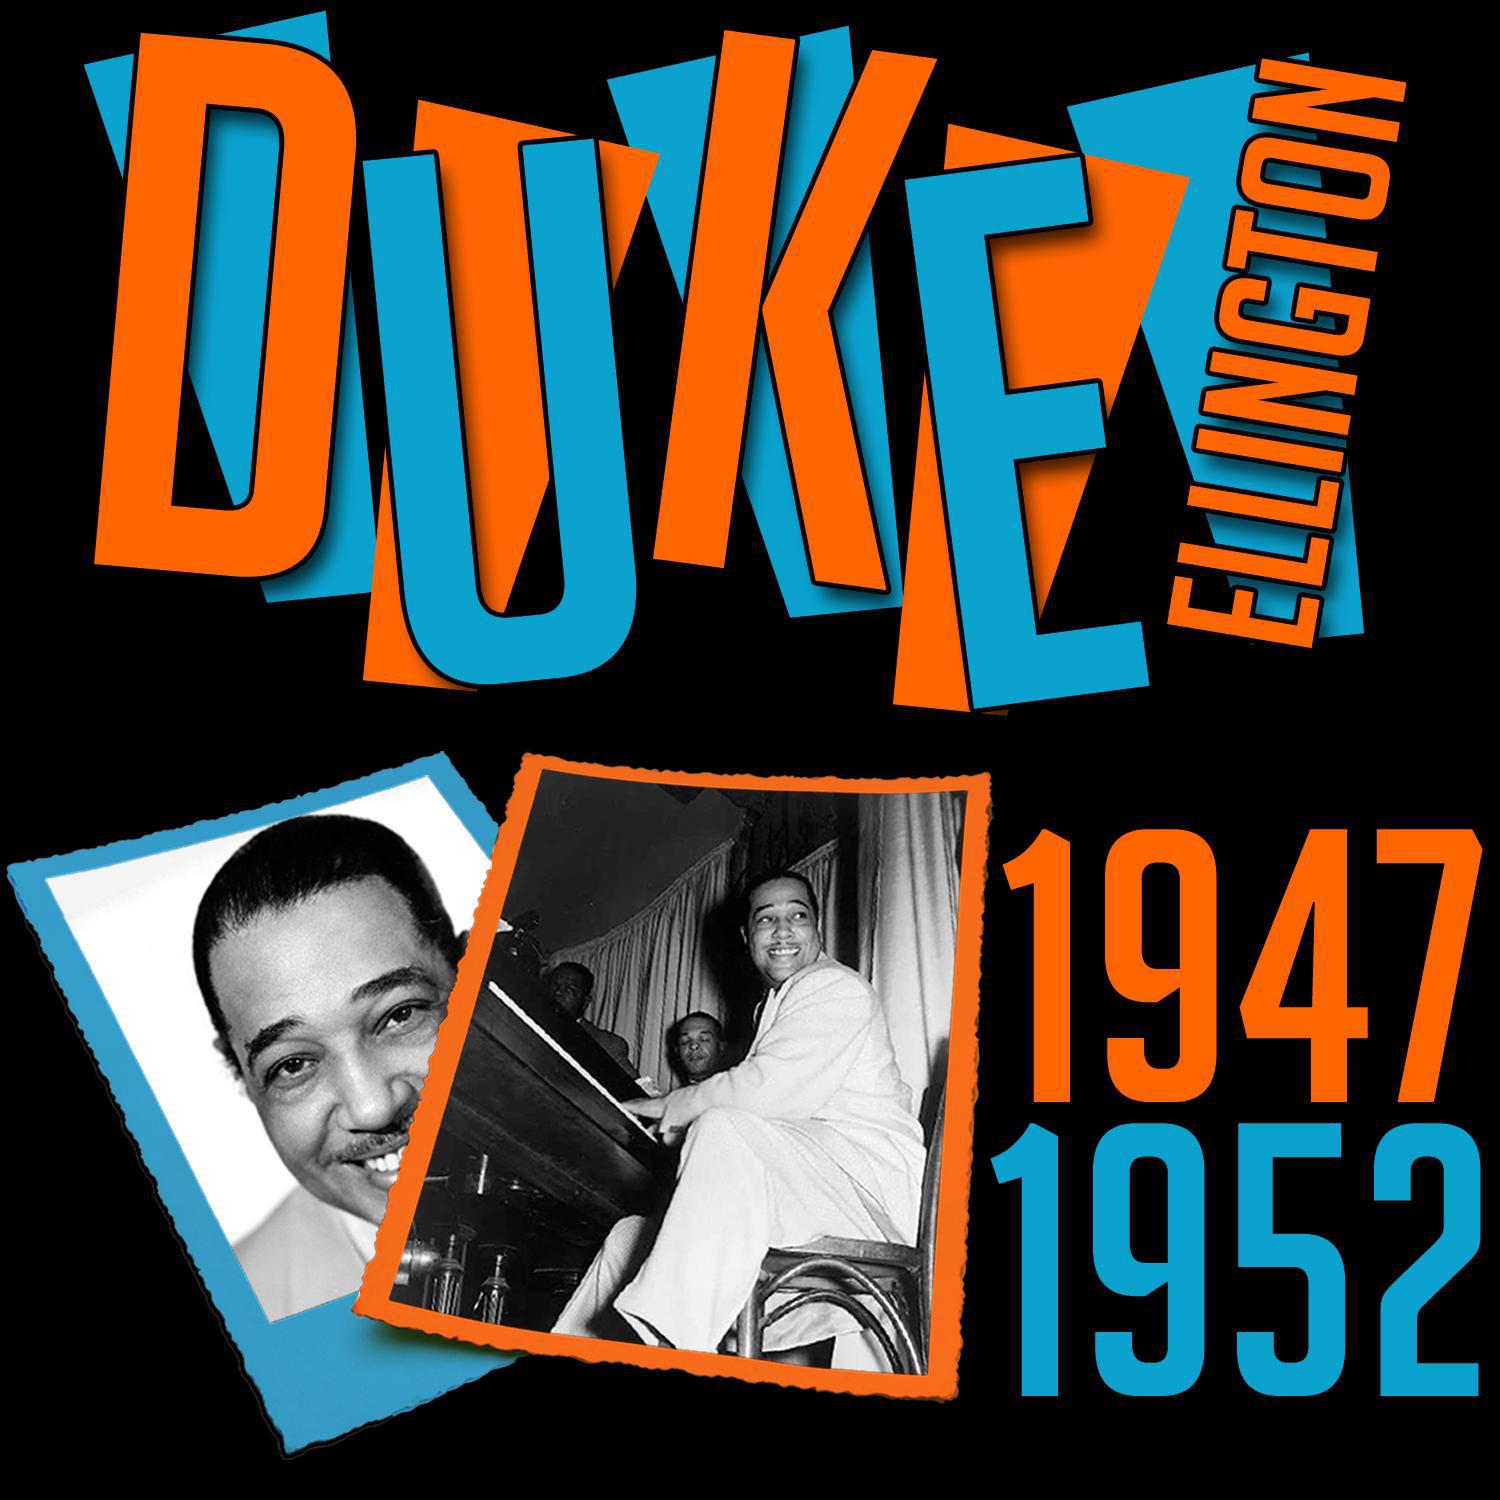 Duke Ellington 1947-1952